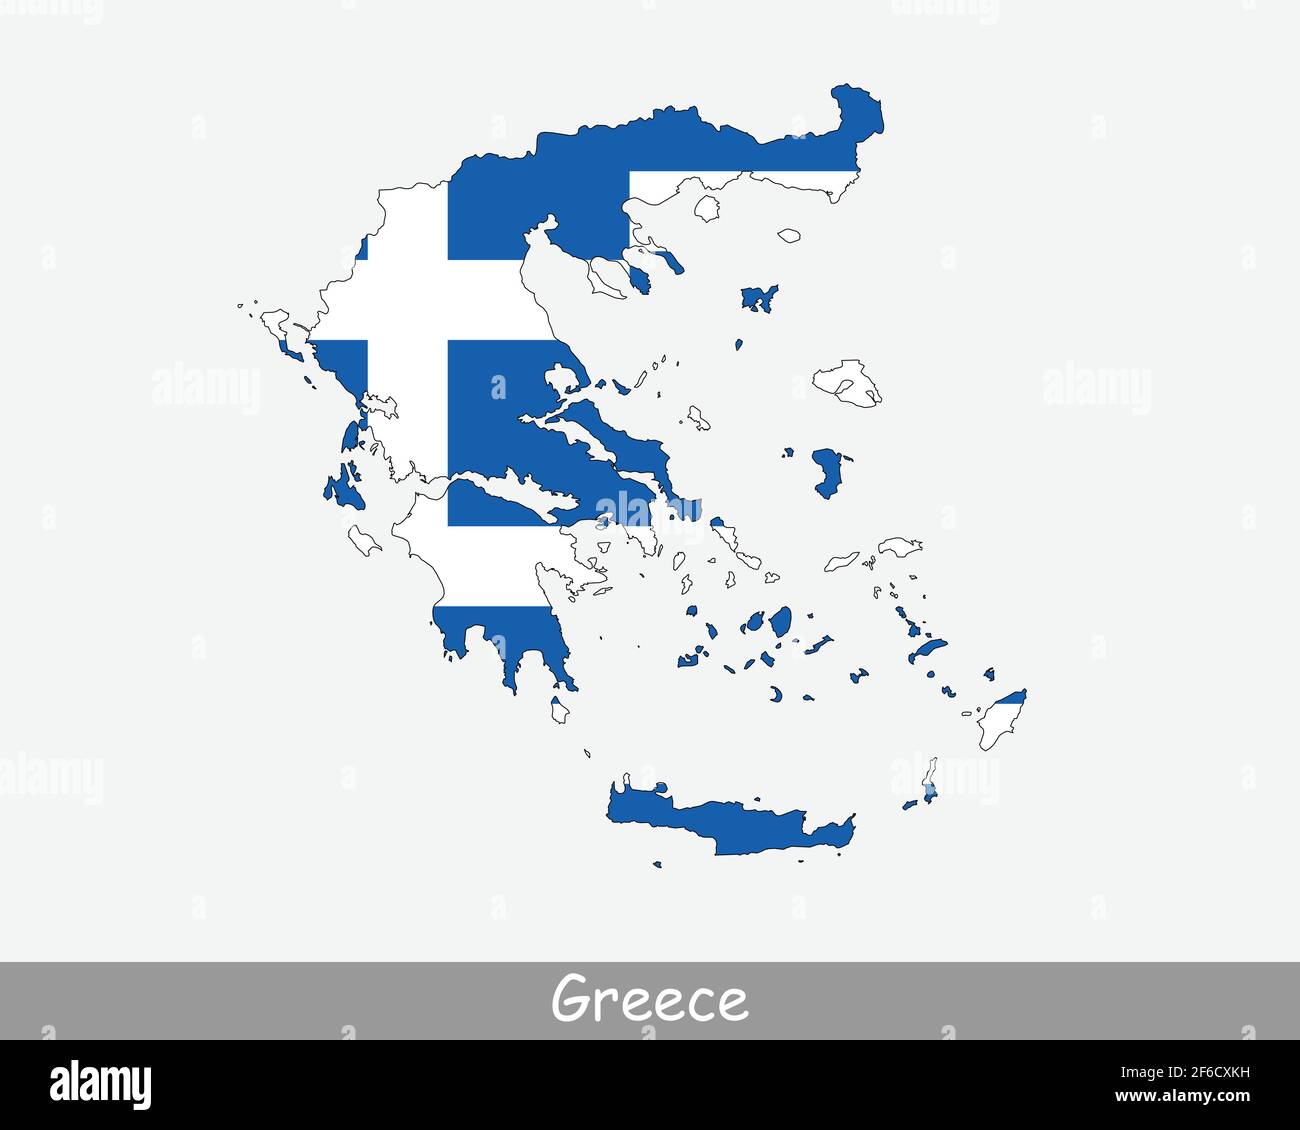 Bandiera della Grecia. Mappa di Hellas con la bandiera nazionale greca isolata su sfondo bianco. Illustrazione vettoriale. Illustrazione Vettoriale